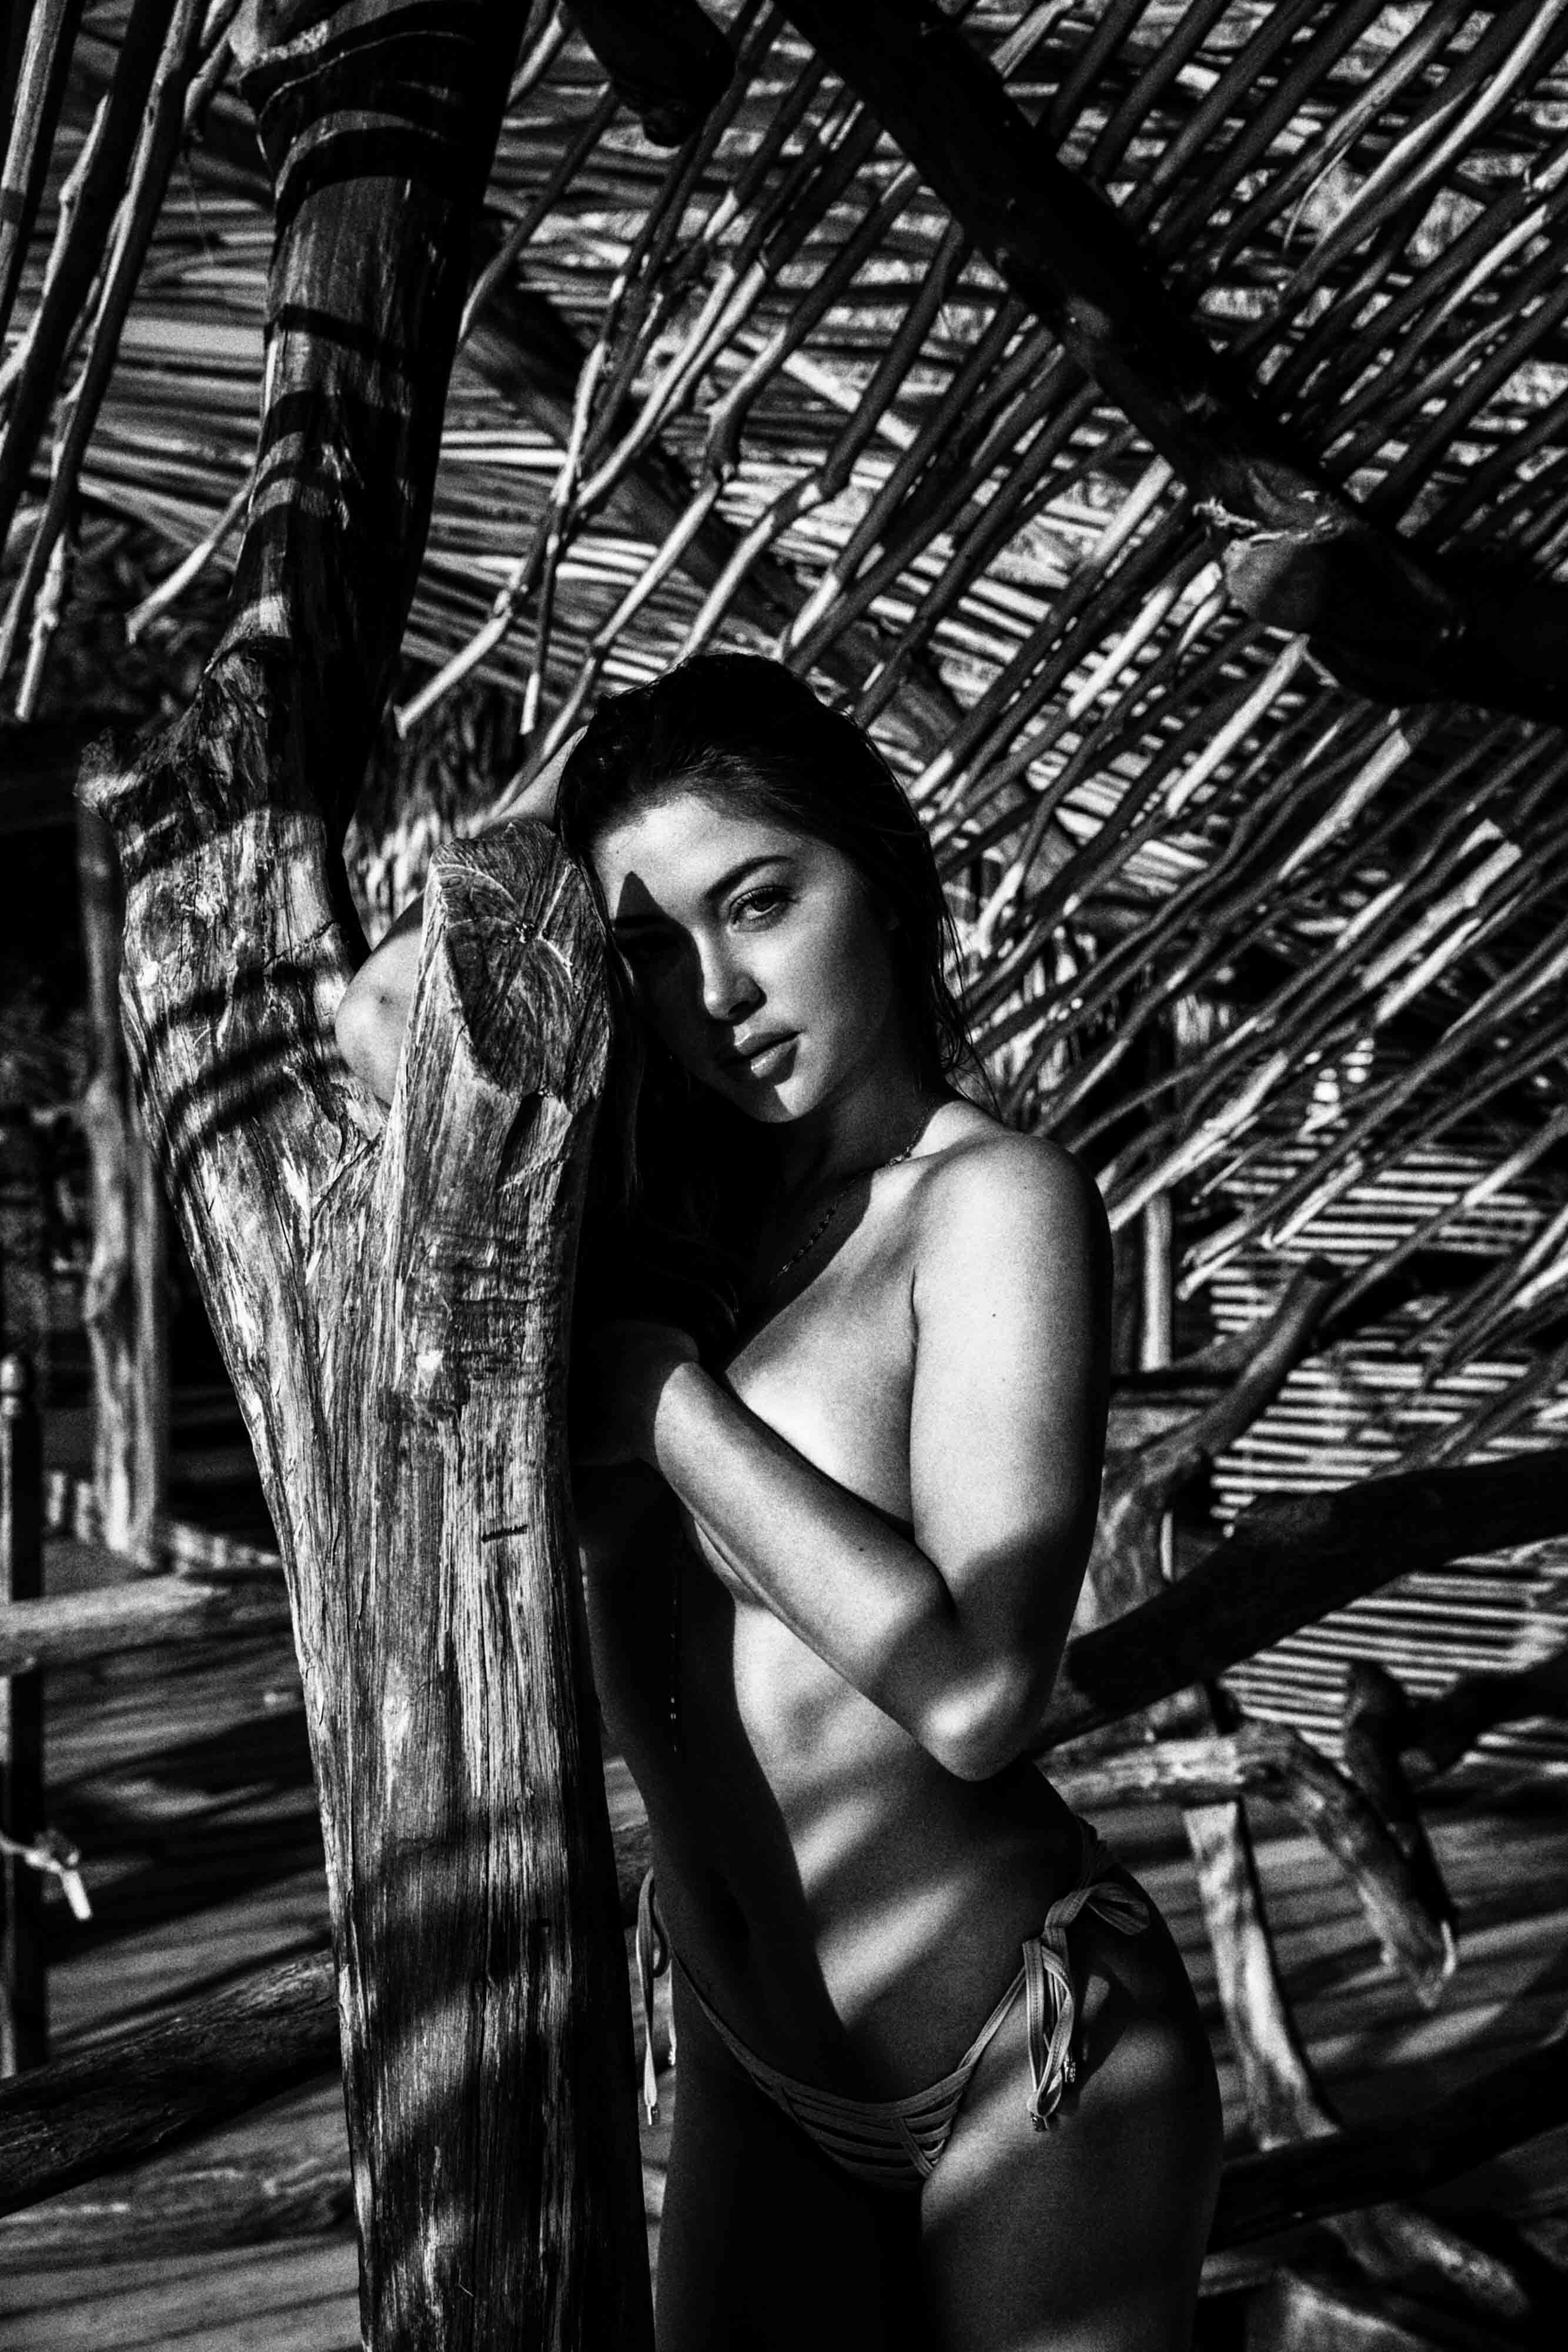 Arianny Celeste nude in TULUM MEXICO - Badboi photo shoot 20x UHQ photos 11.jpg